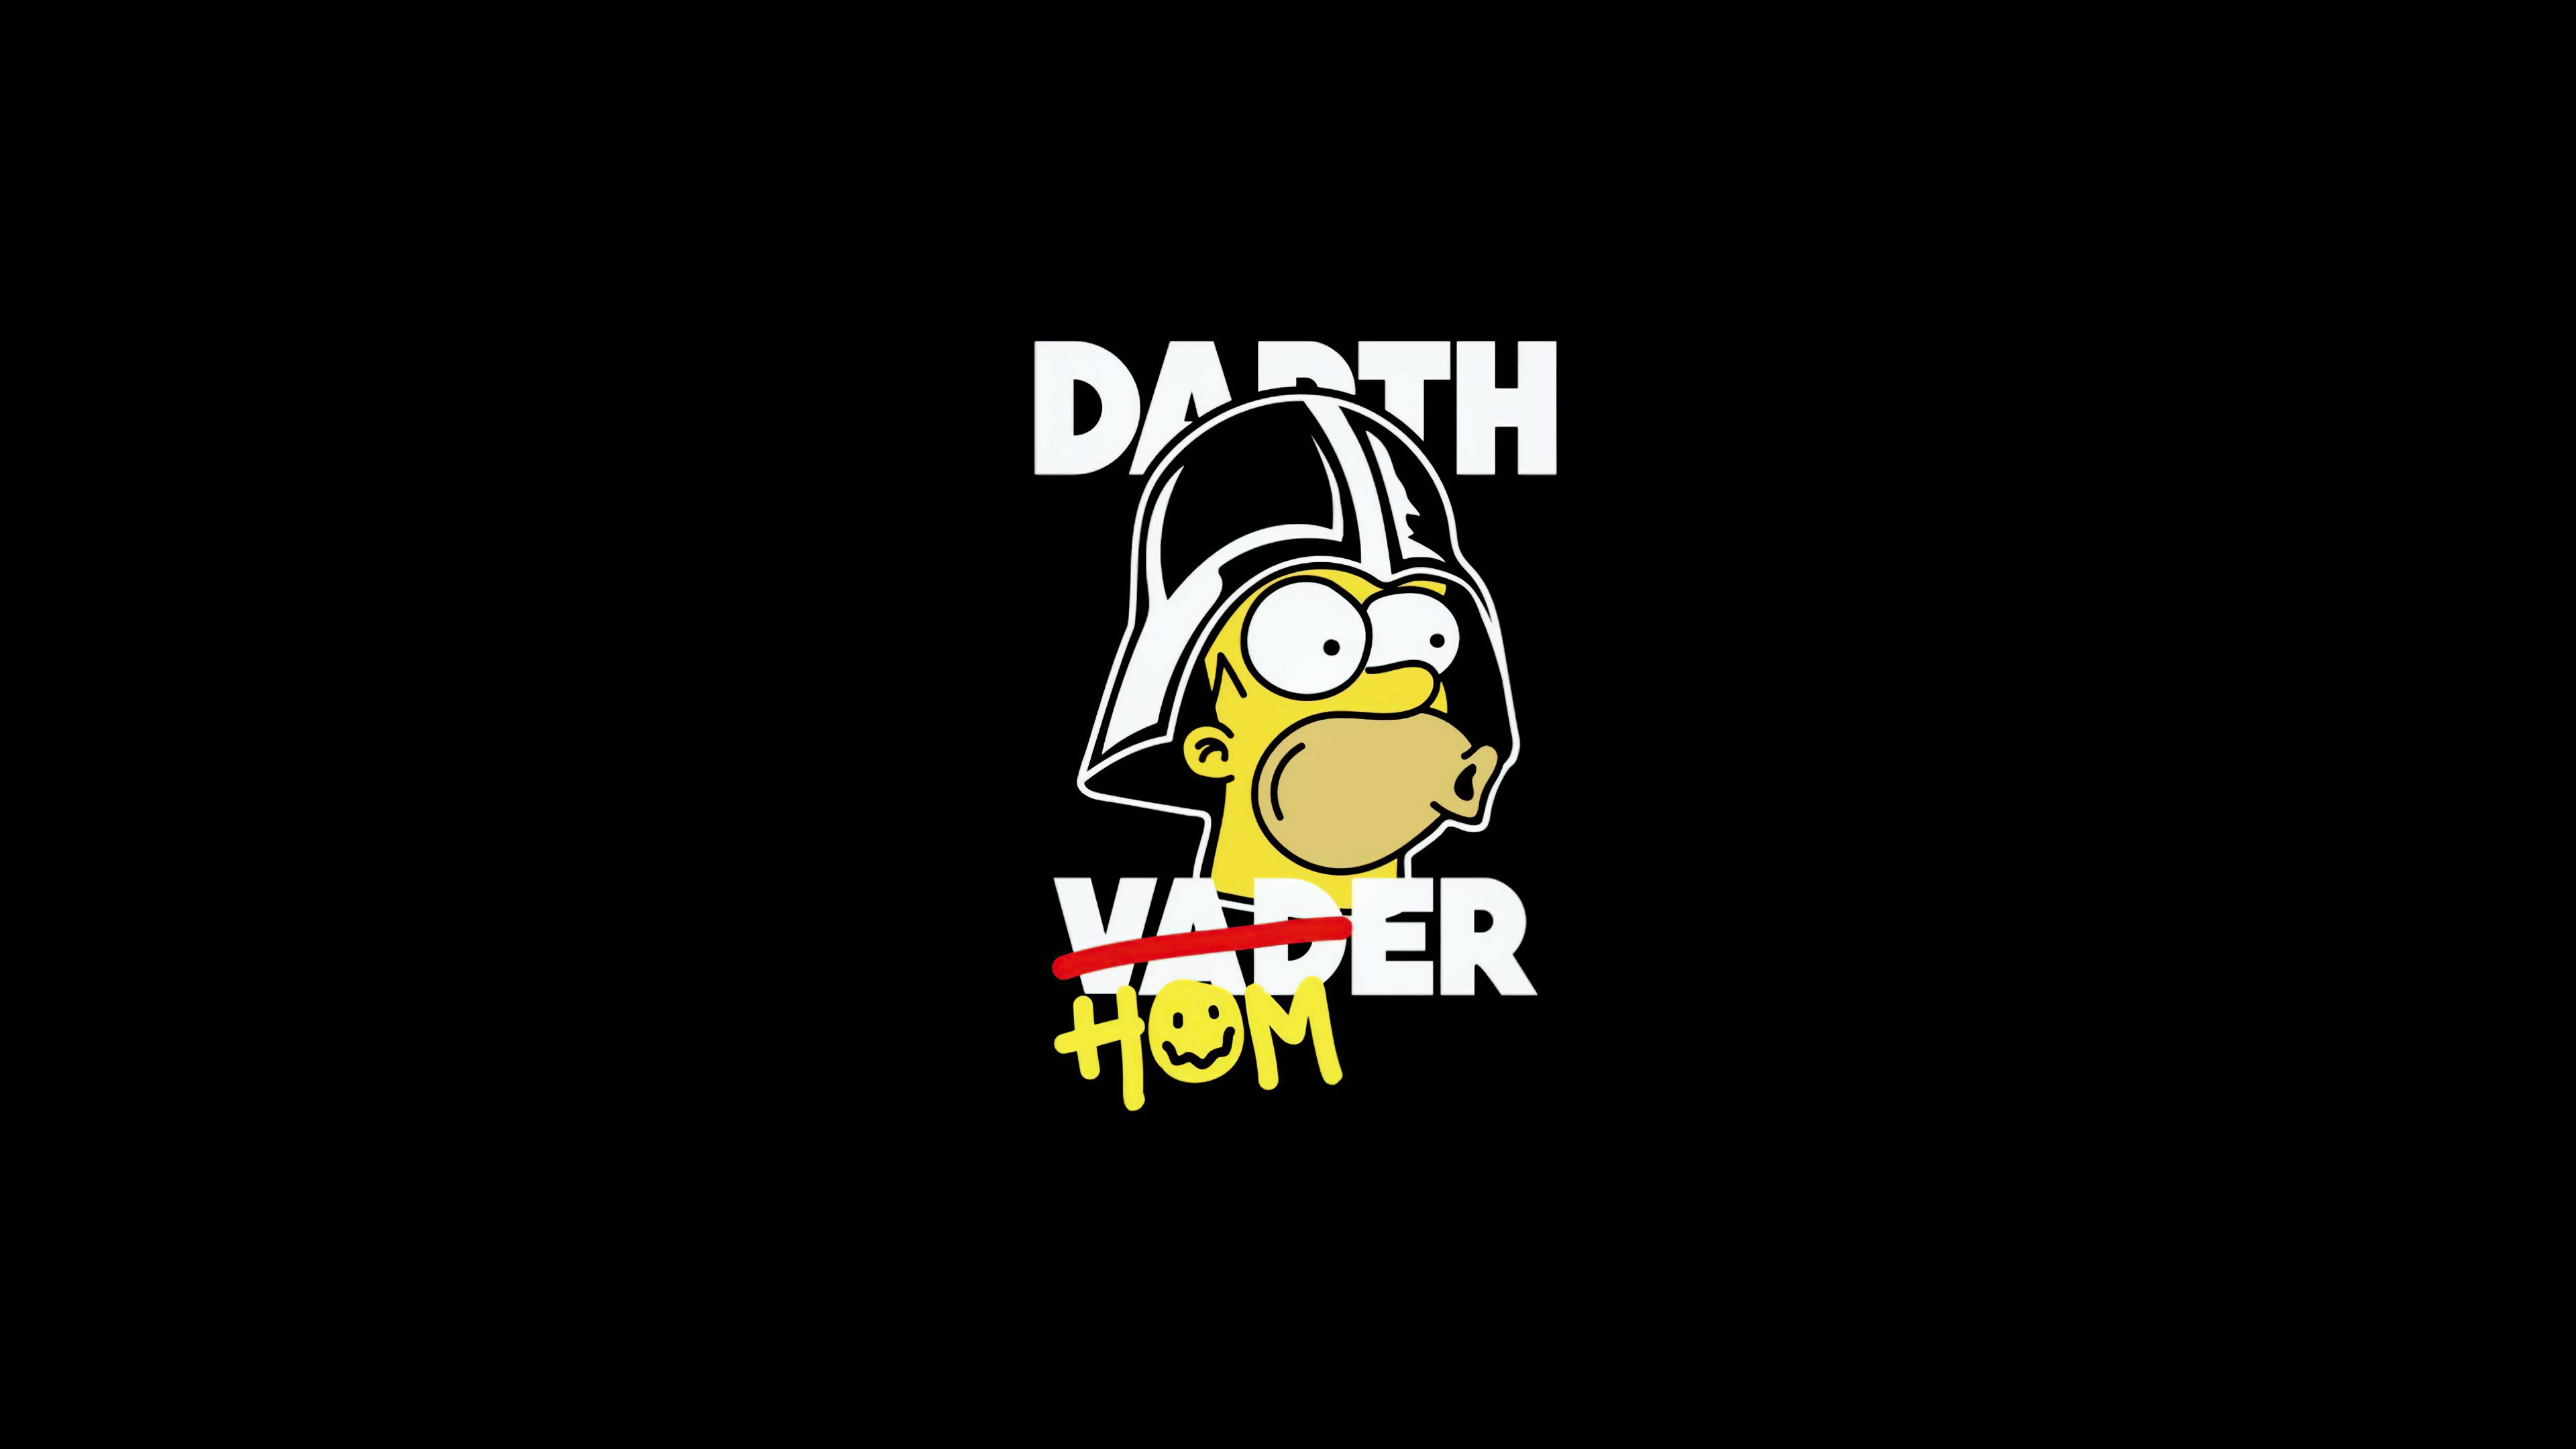 Fondos de pantalla Darth Homer